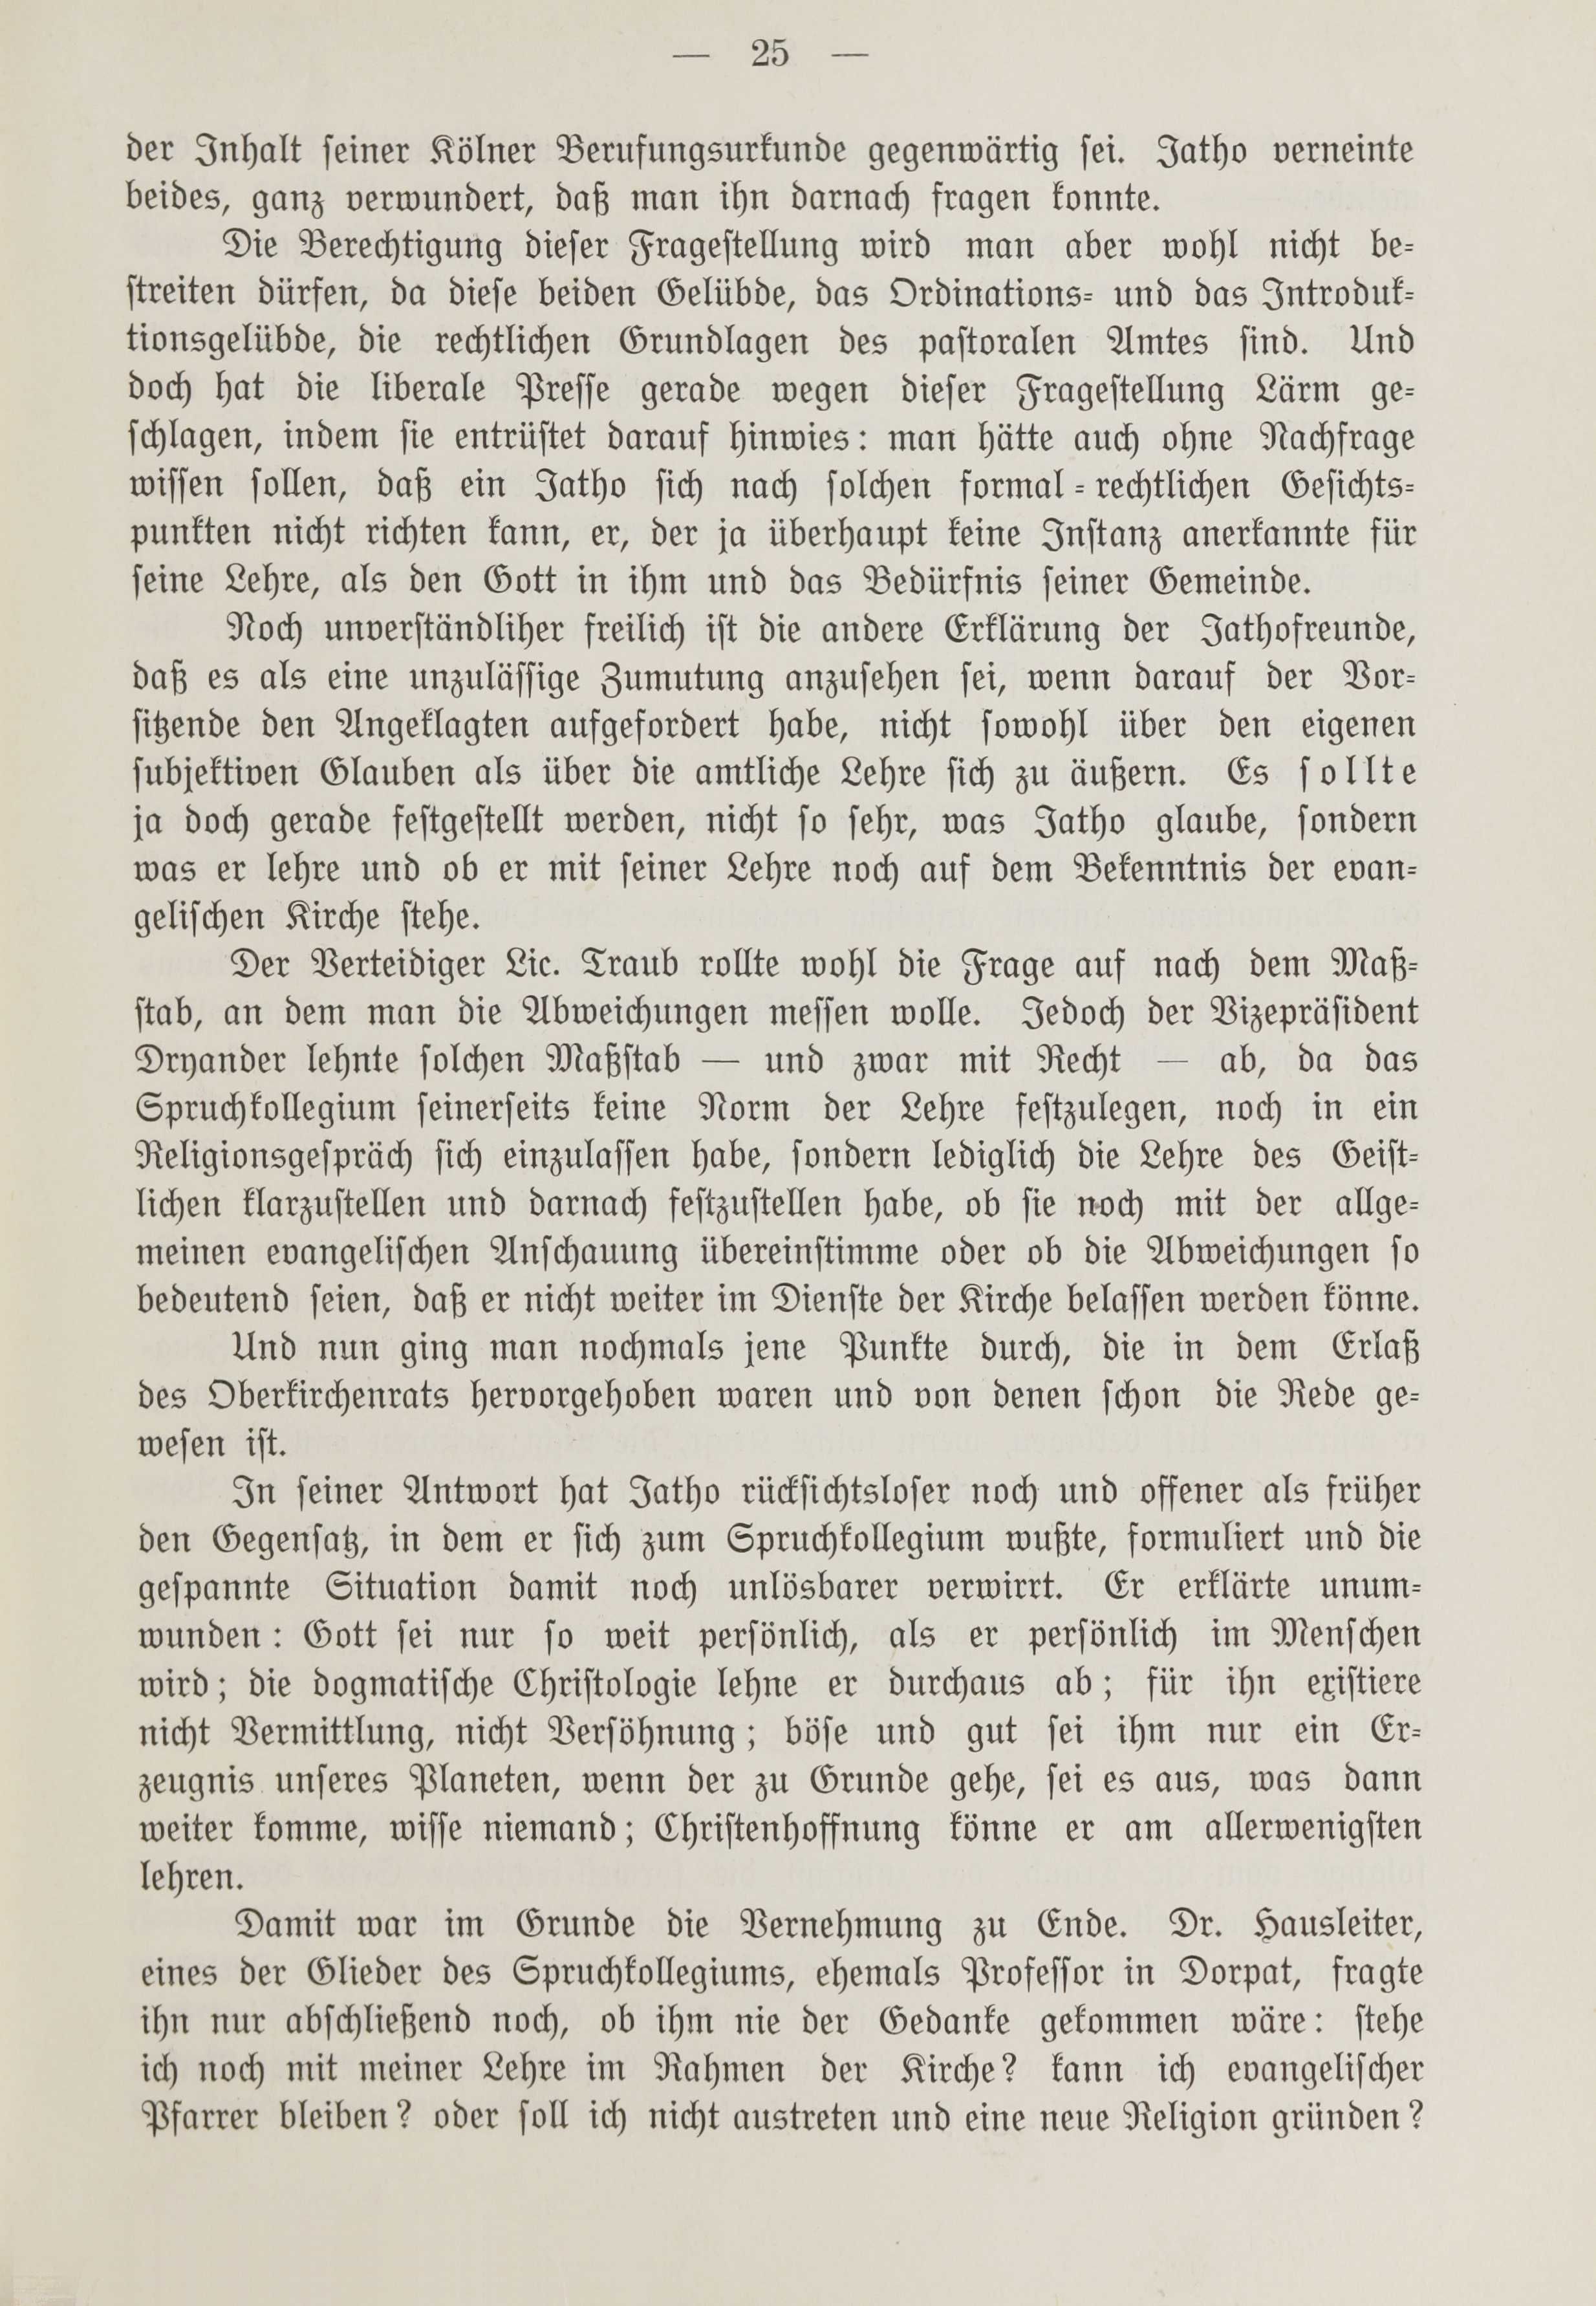 Deutsche Monatsschrift für Russland [1] (1912) | 32. (25) Main body of text